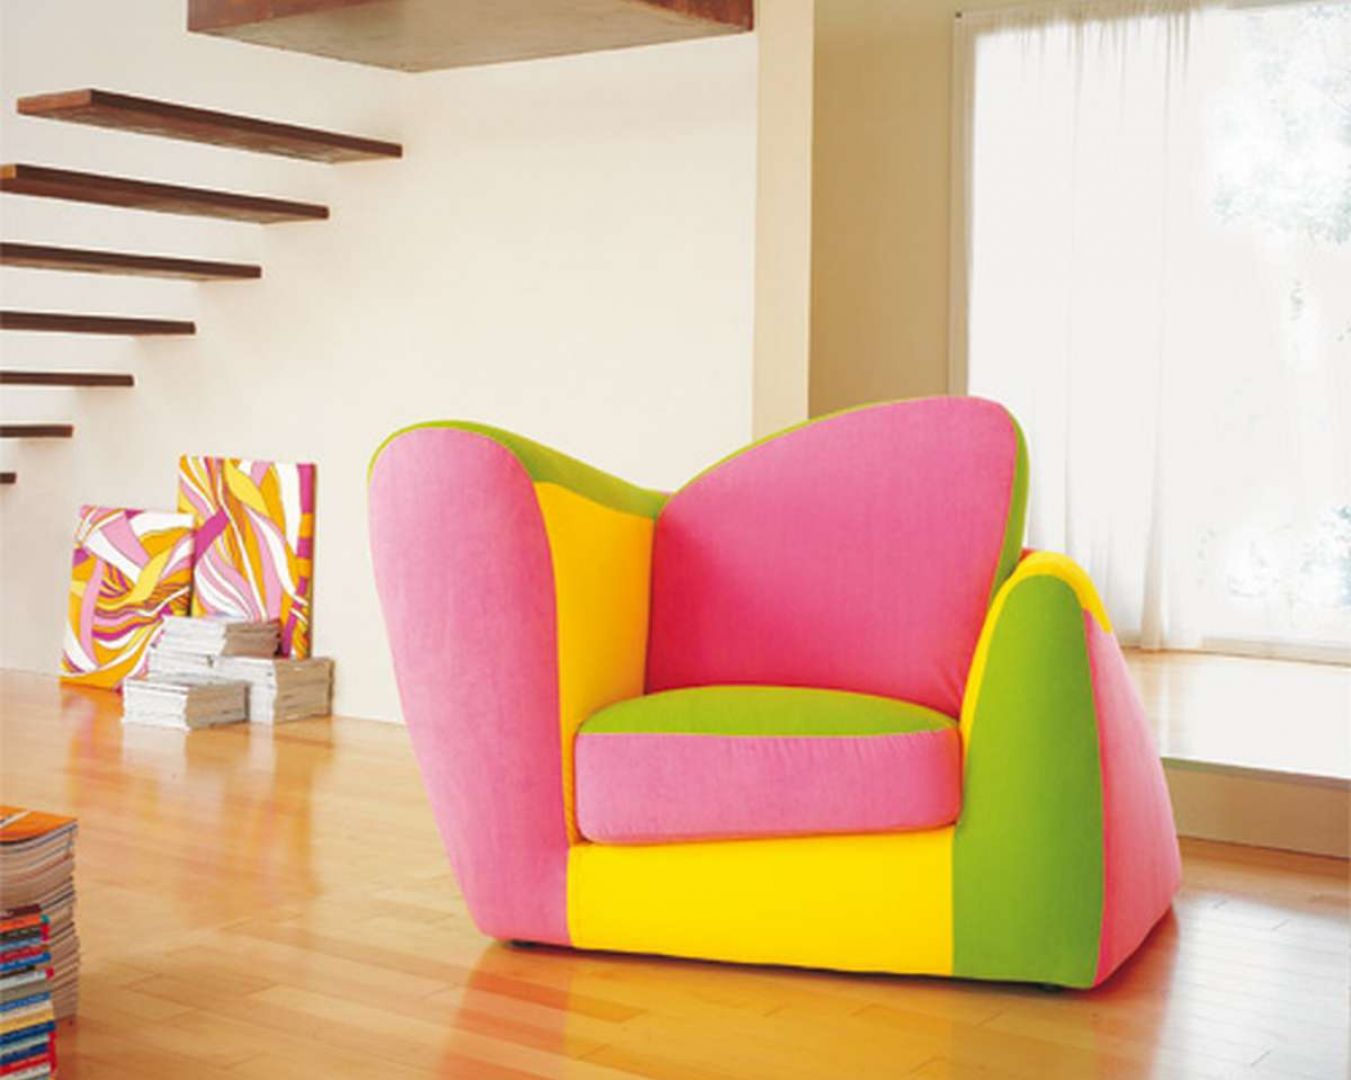 Kolorowy fotel w jaskrawych i ciepłych barwach, to idealny mebel do pokoju dziecięcego, a nawet nowoczesnego salonu
Fot. Archiwum